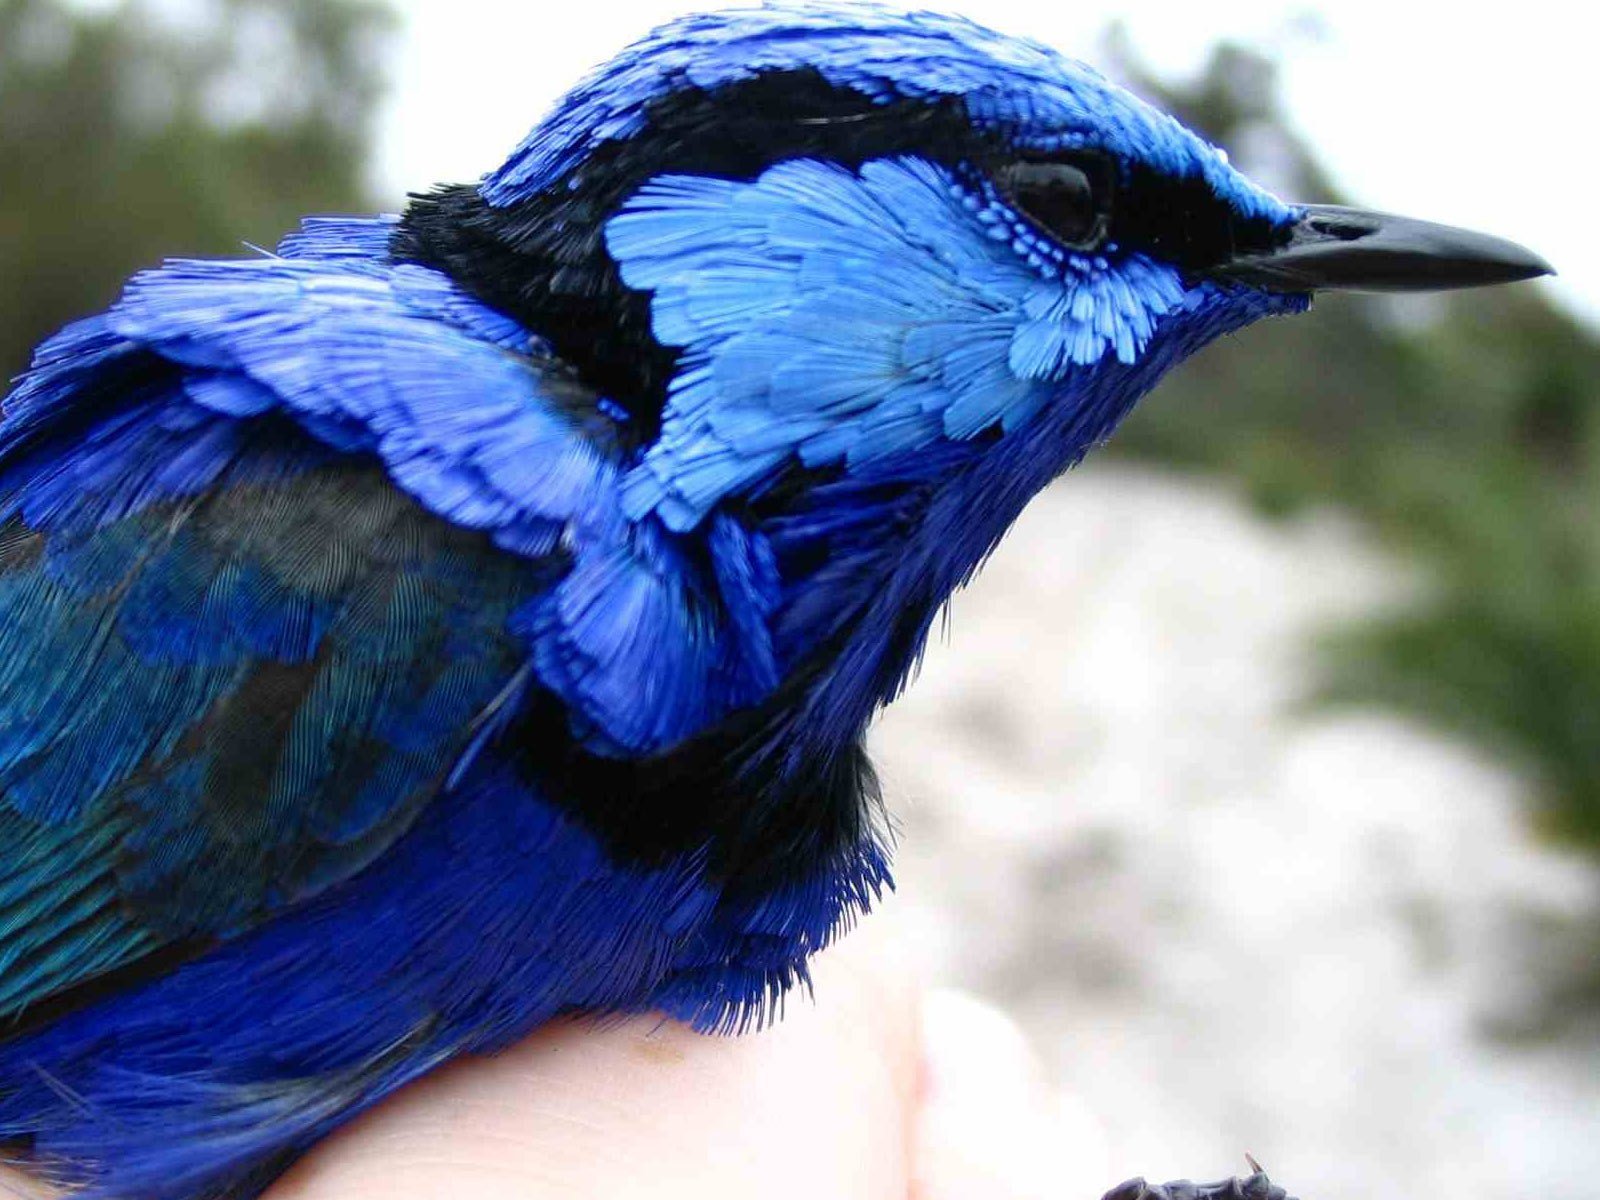 Появление синей окраски. Сиалия Лазурная птица. Голубая андигена. Синяя птица. Синяя птичка.